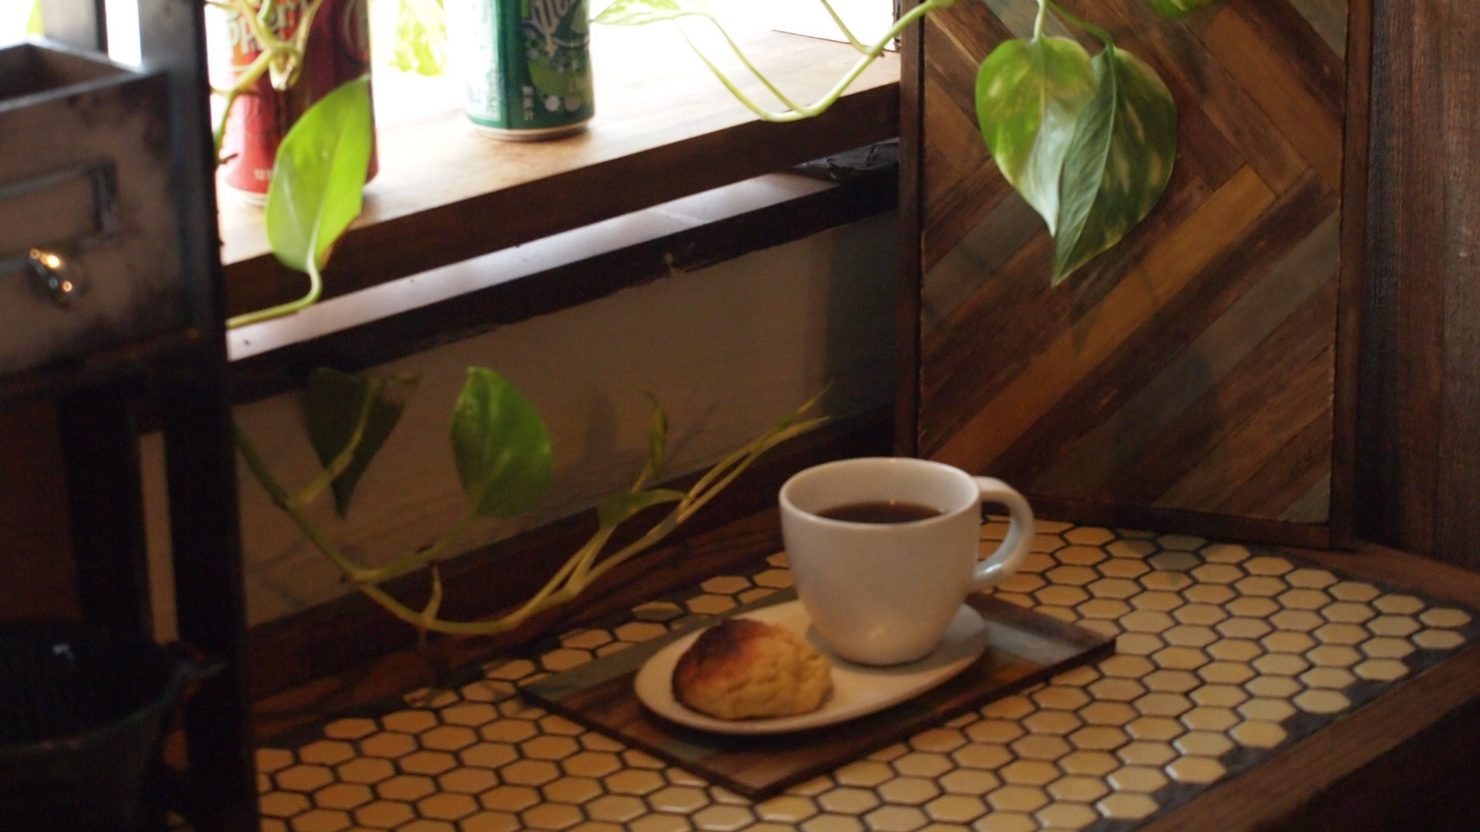 ホームズ おうちカフェをとことん追求 カフェテイストの空間でリラックスタイムを 暮らし方から物件探し